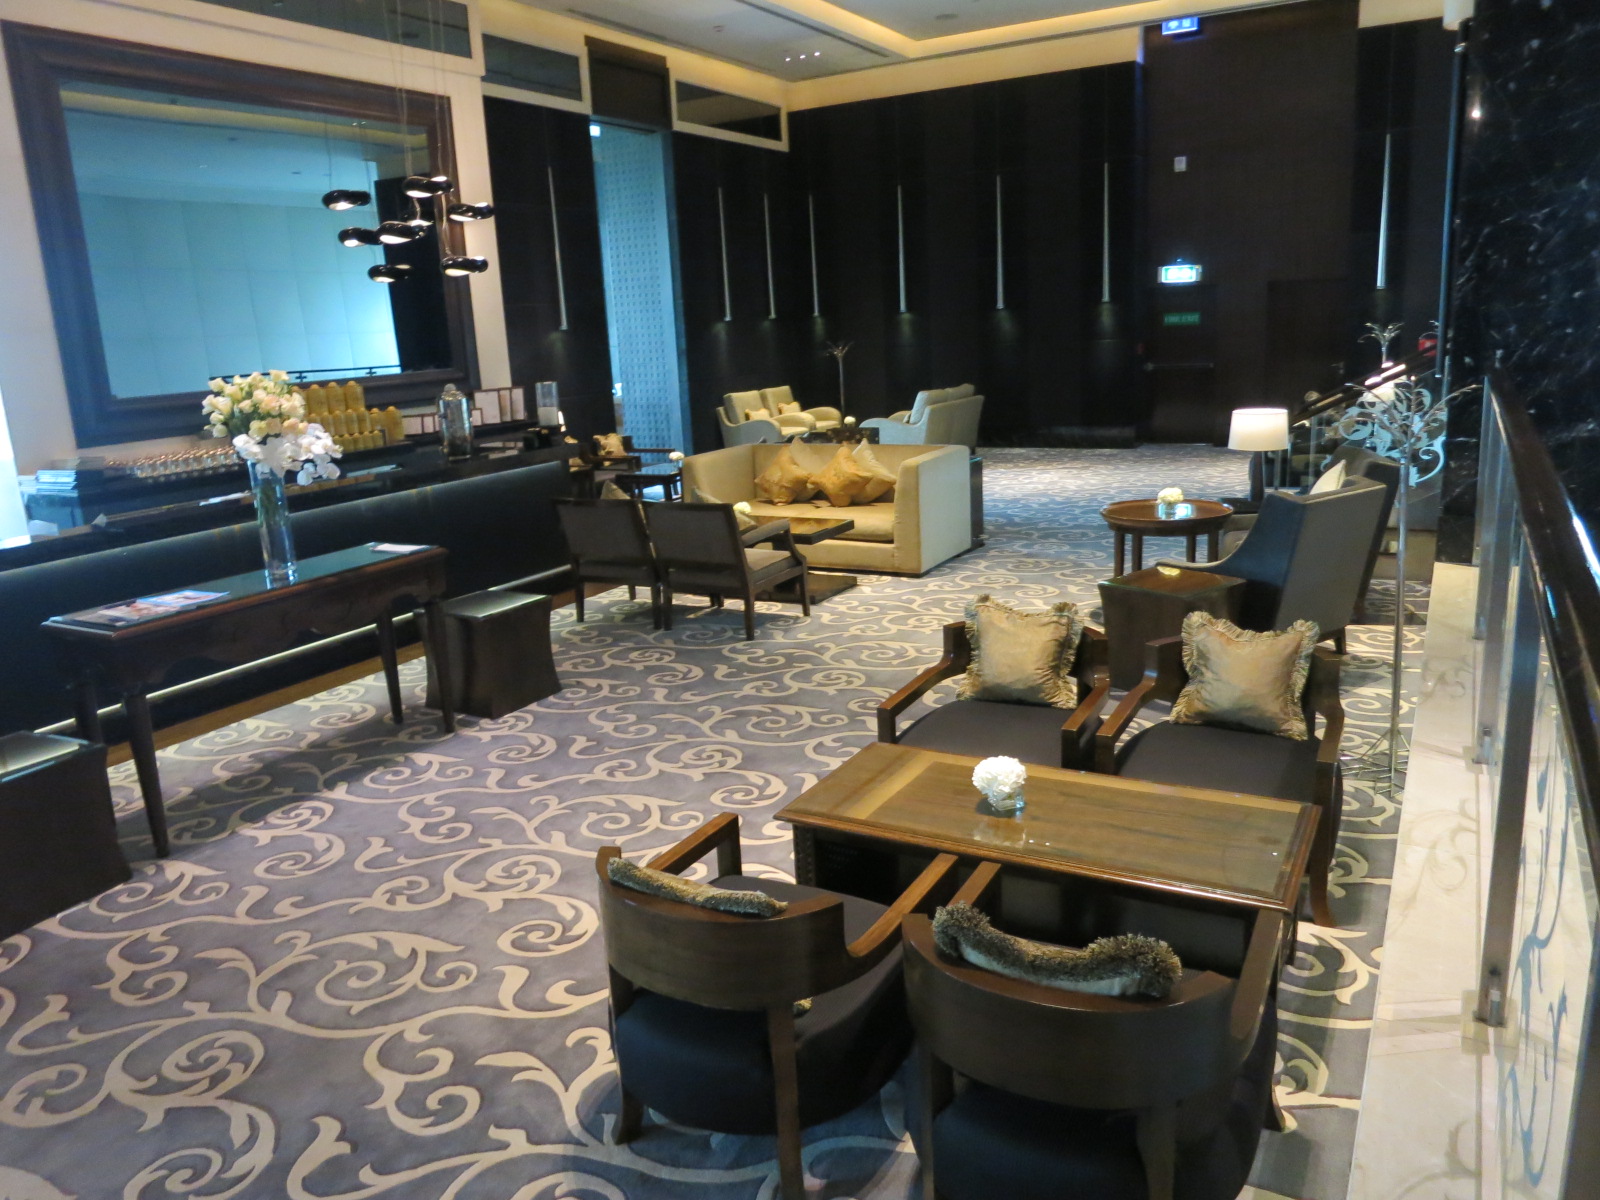 St. Regis Bangkok hotel lobby bar seating